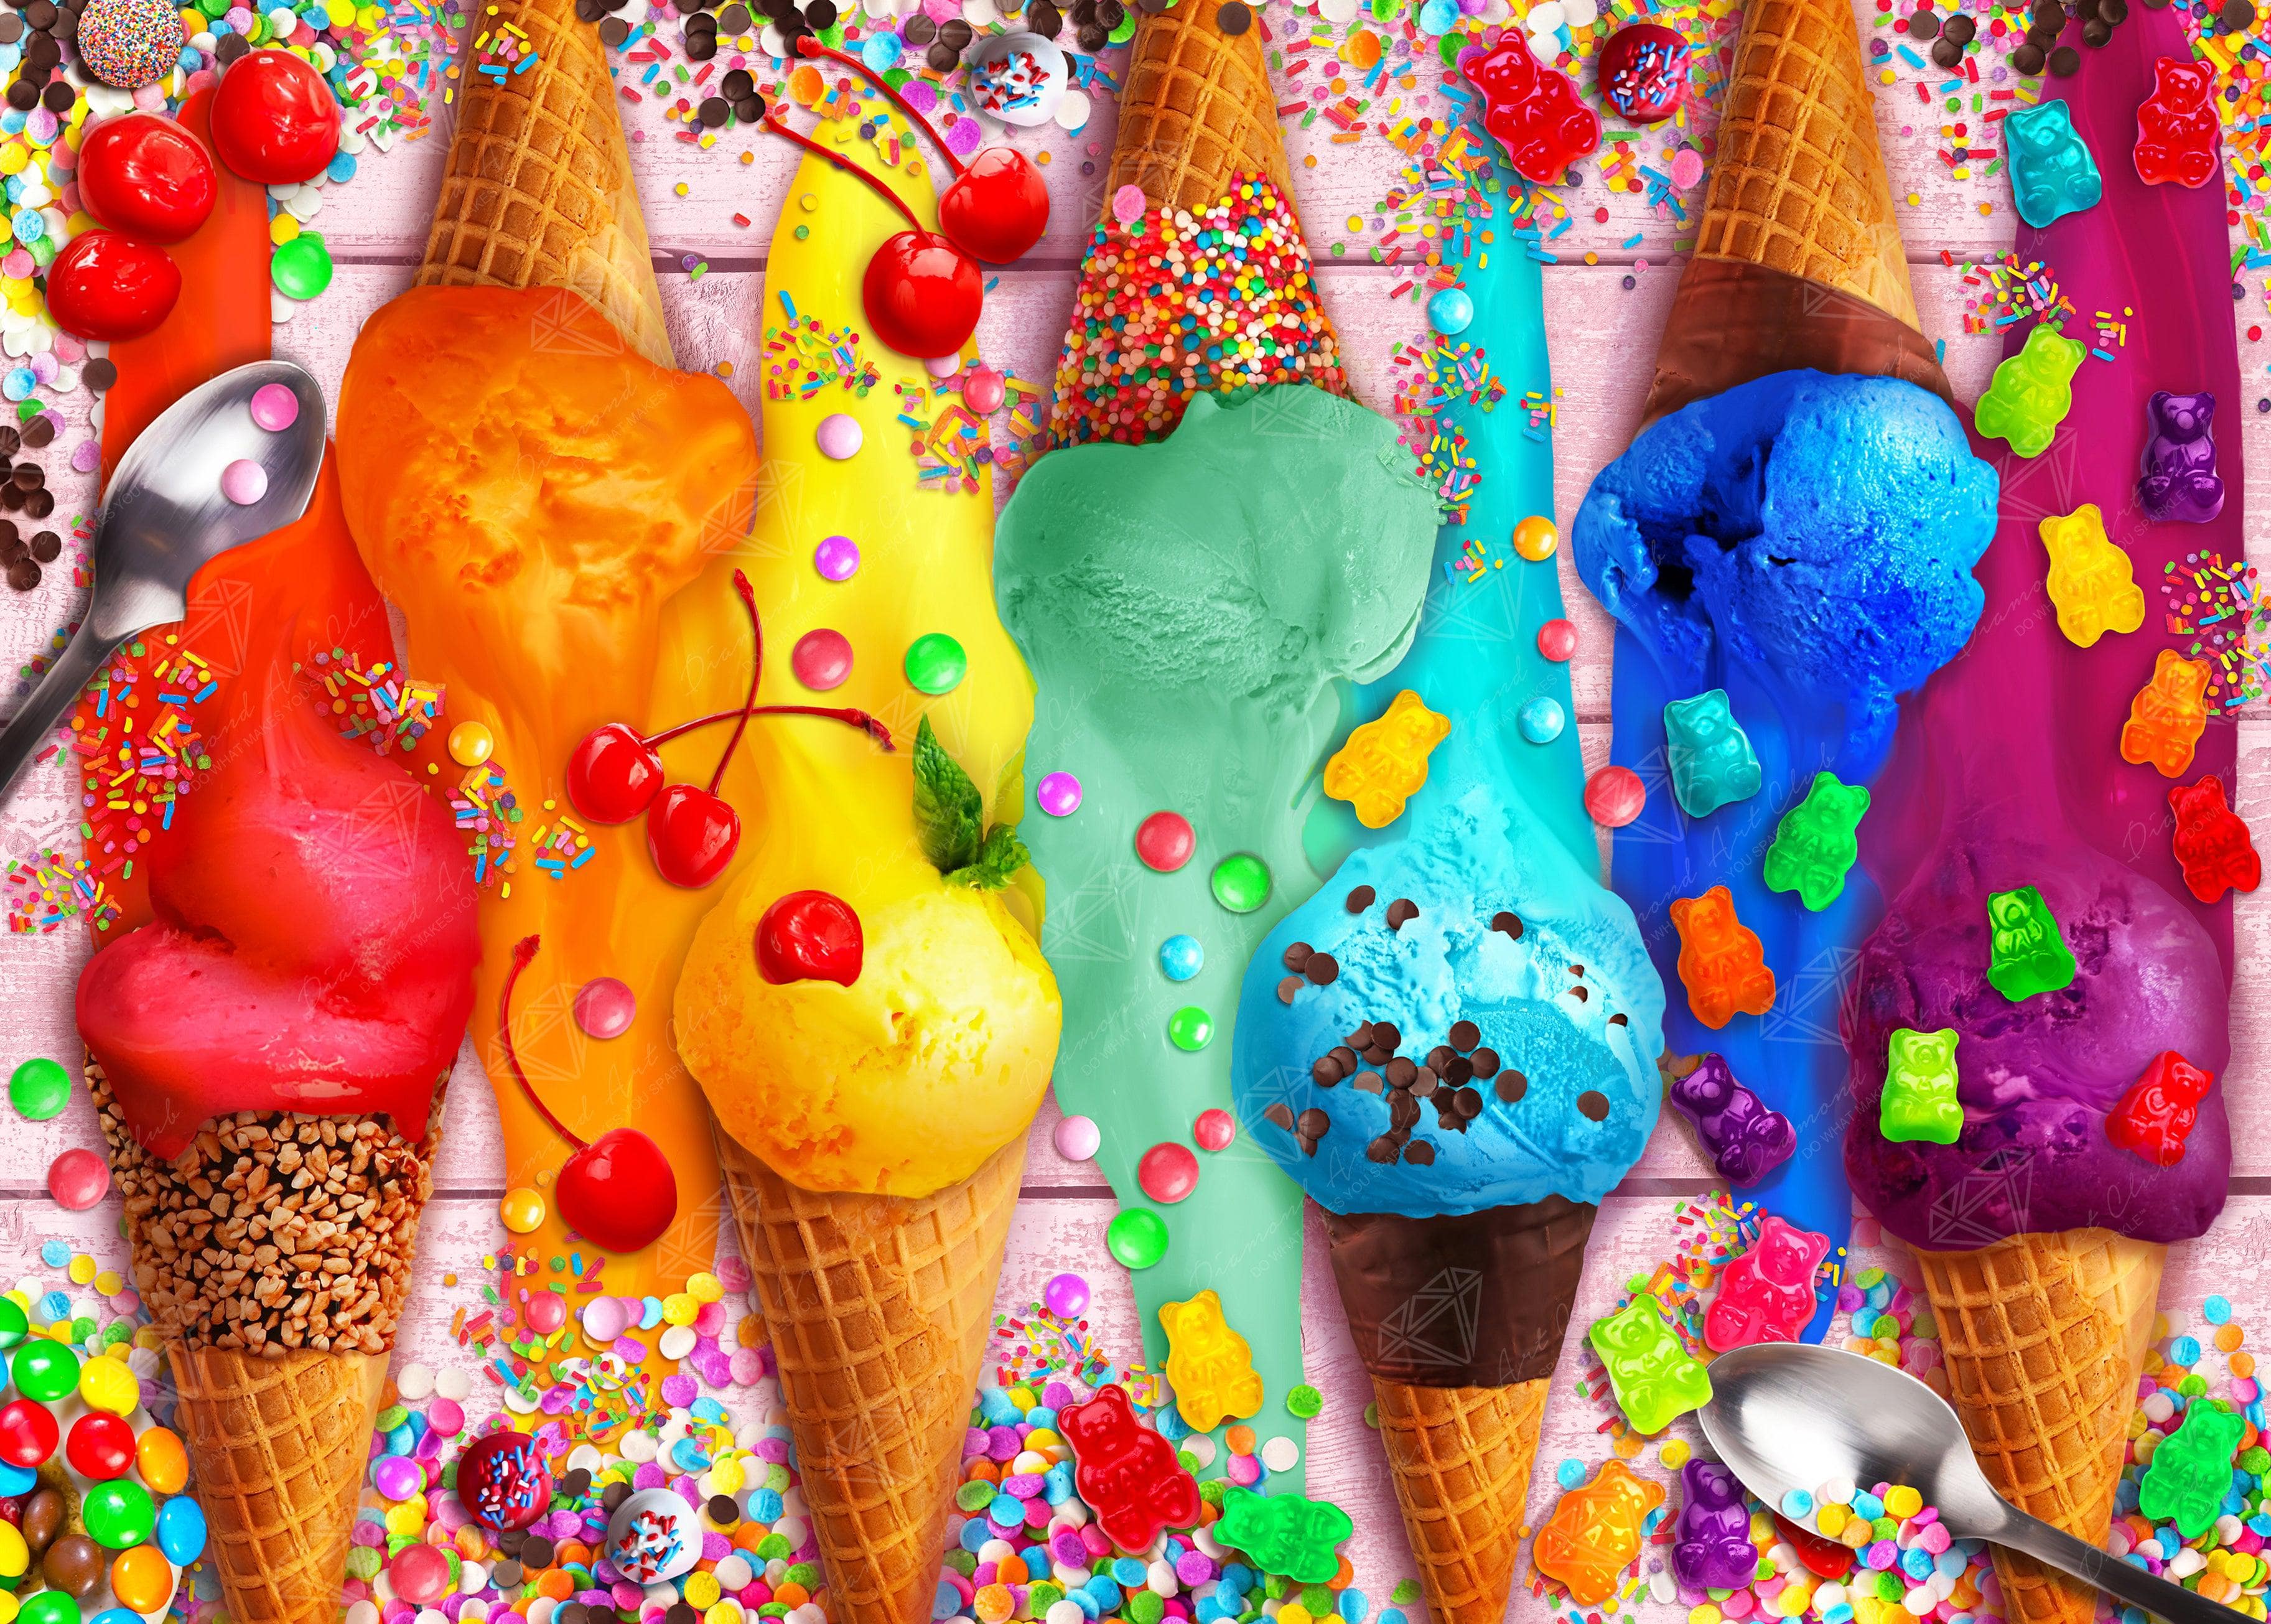 Vibrant Rainbow Ice Cream Colors